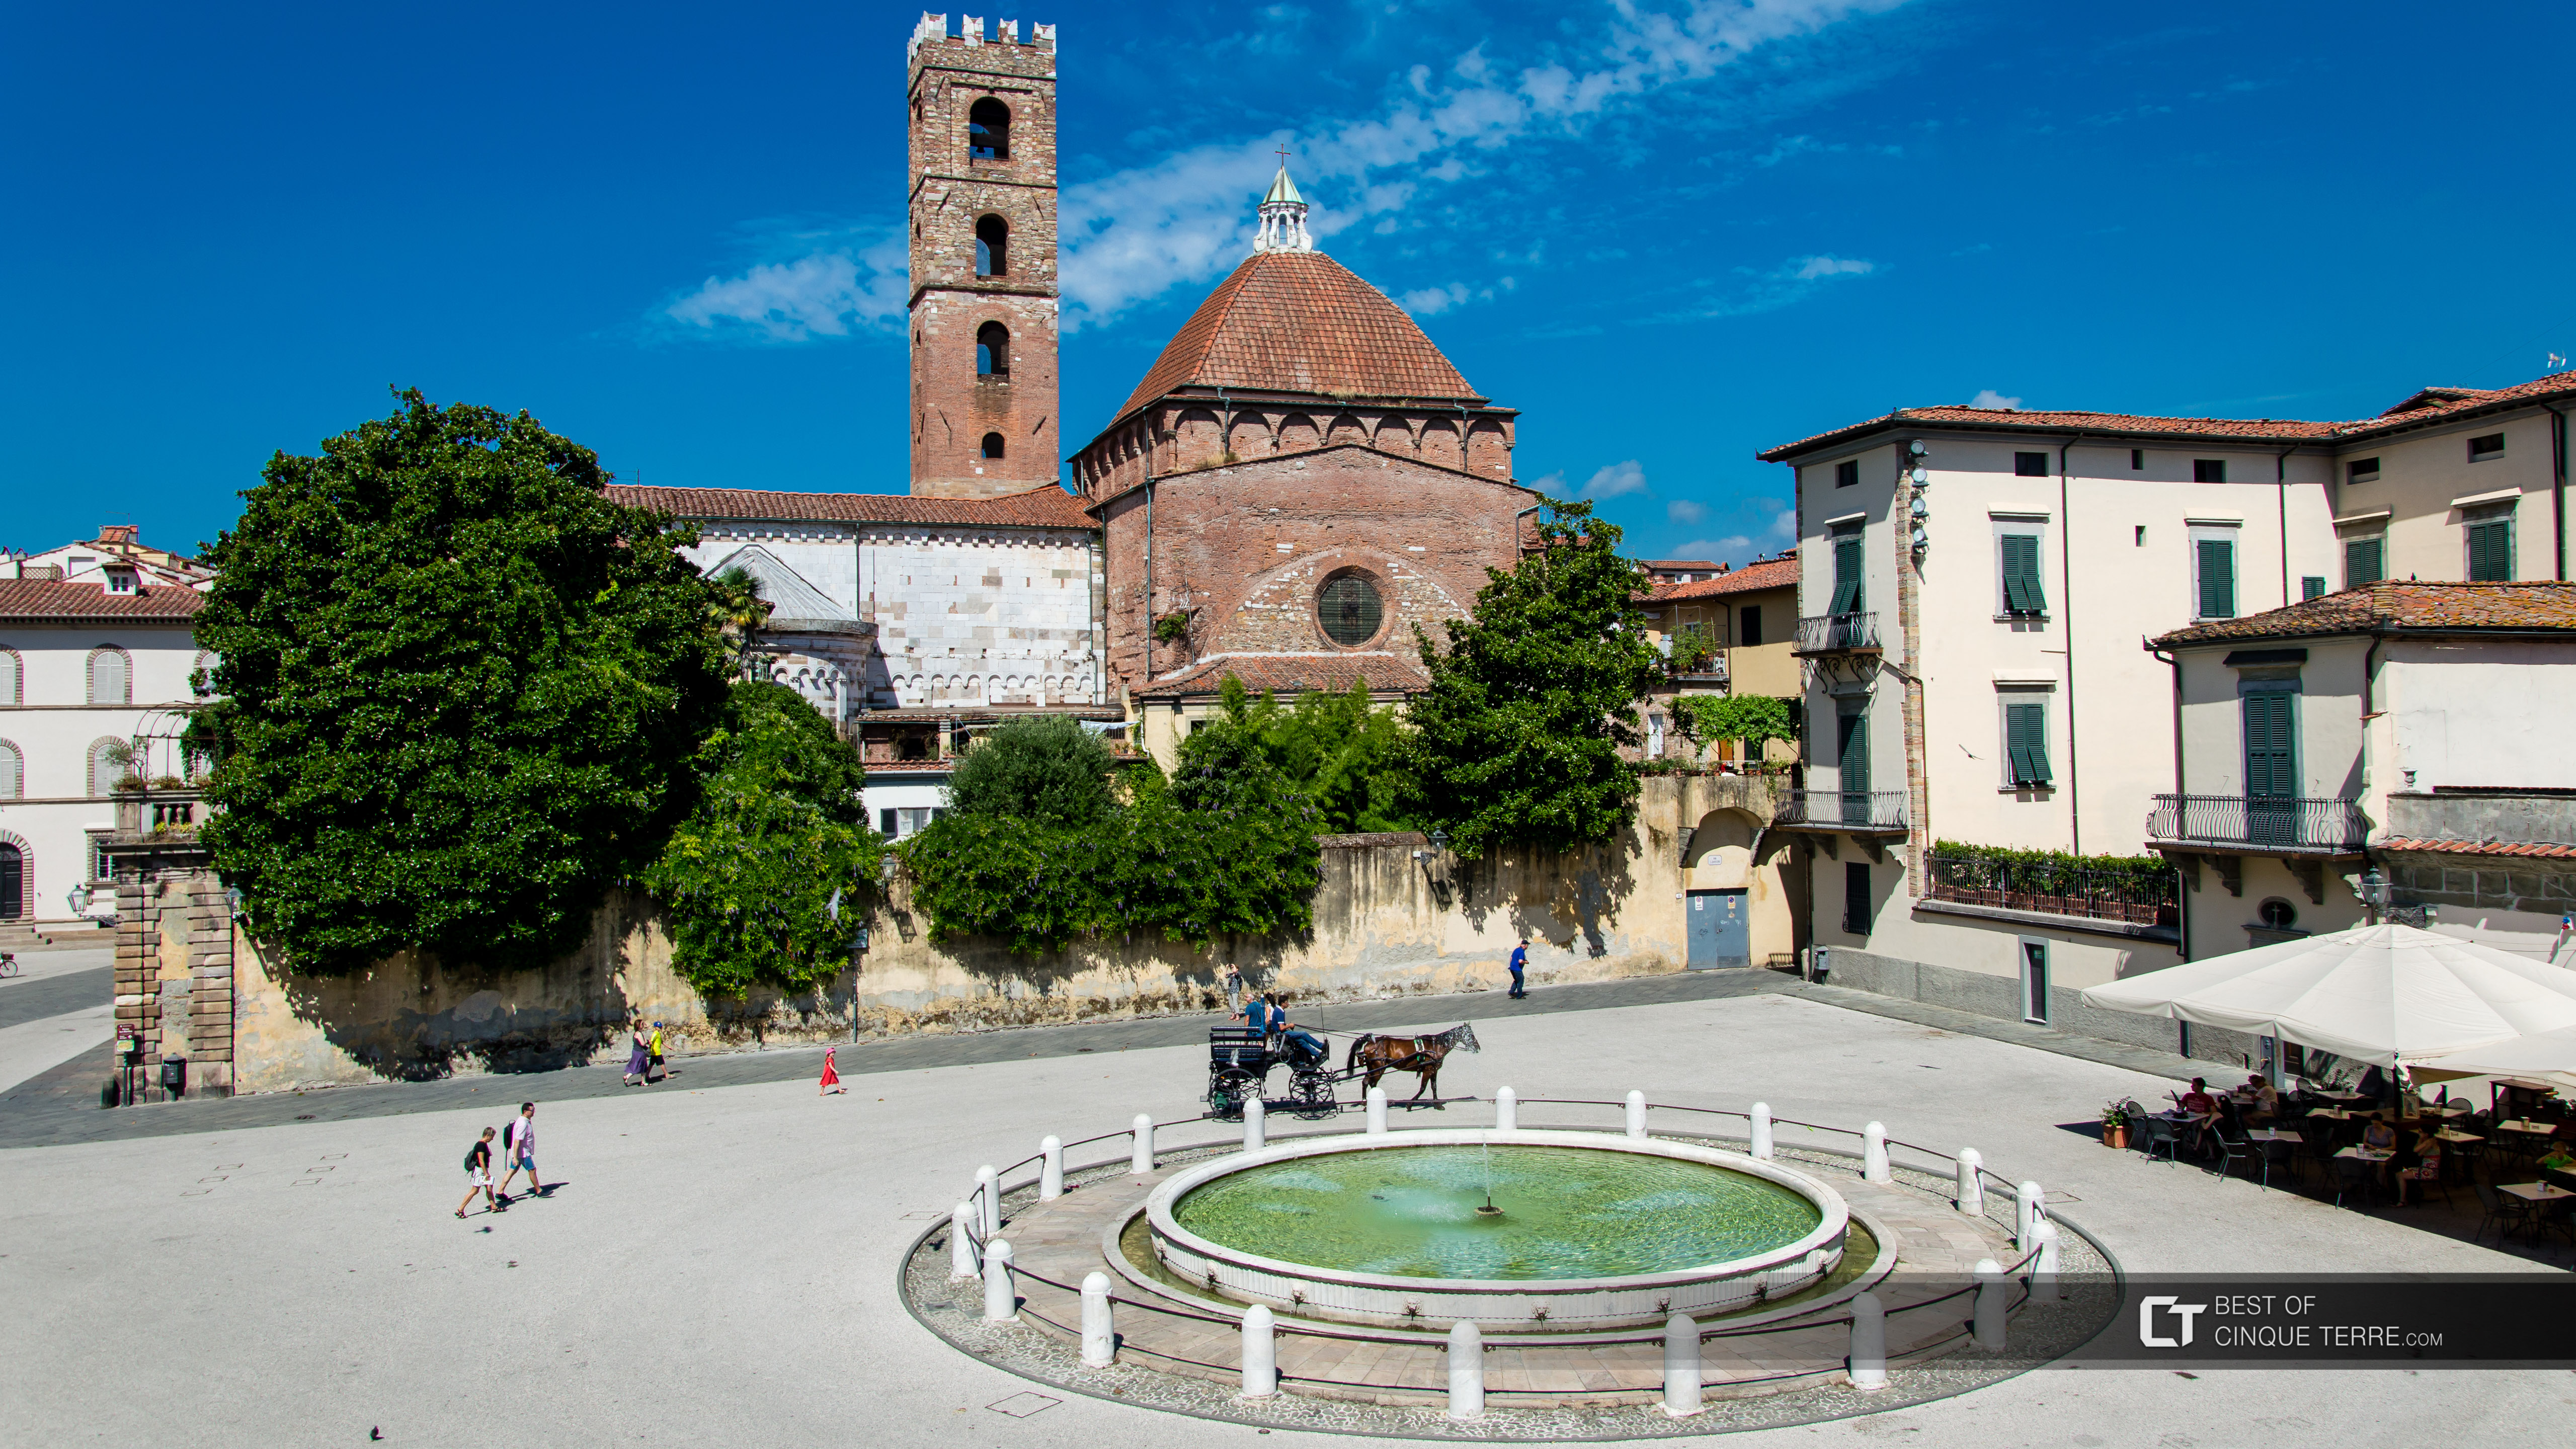 Piazza Antelminelli e o Campanário da Igreja dos Santos João e Reparata, Lucca, Itália